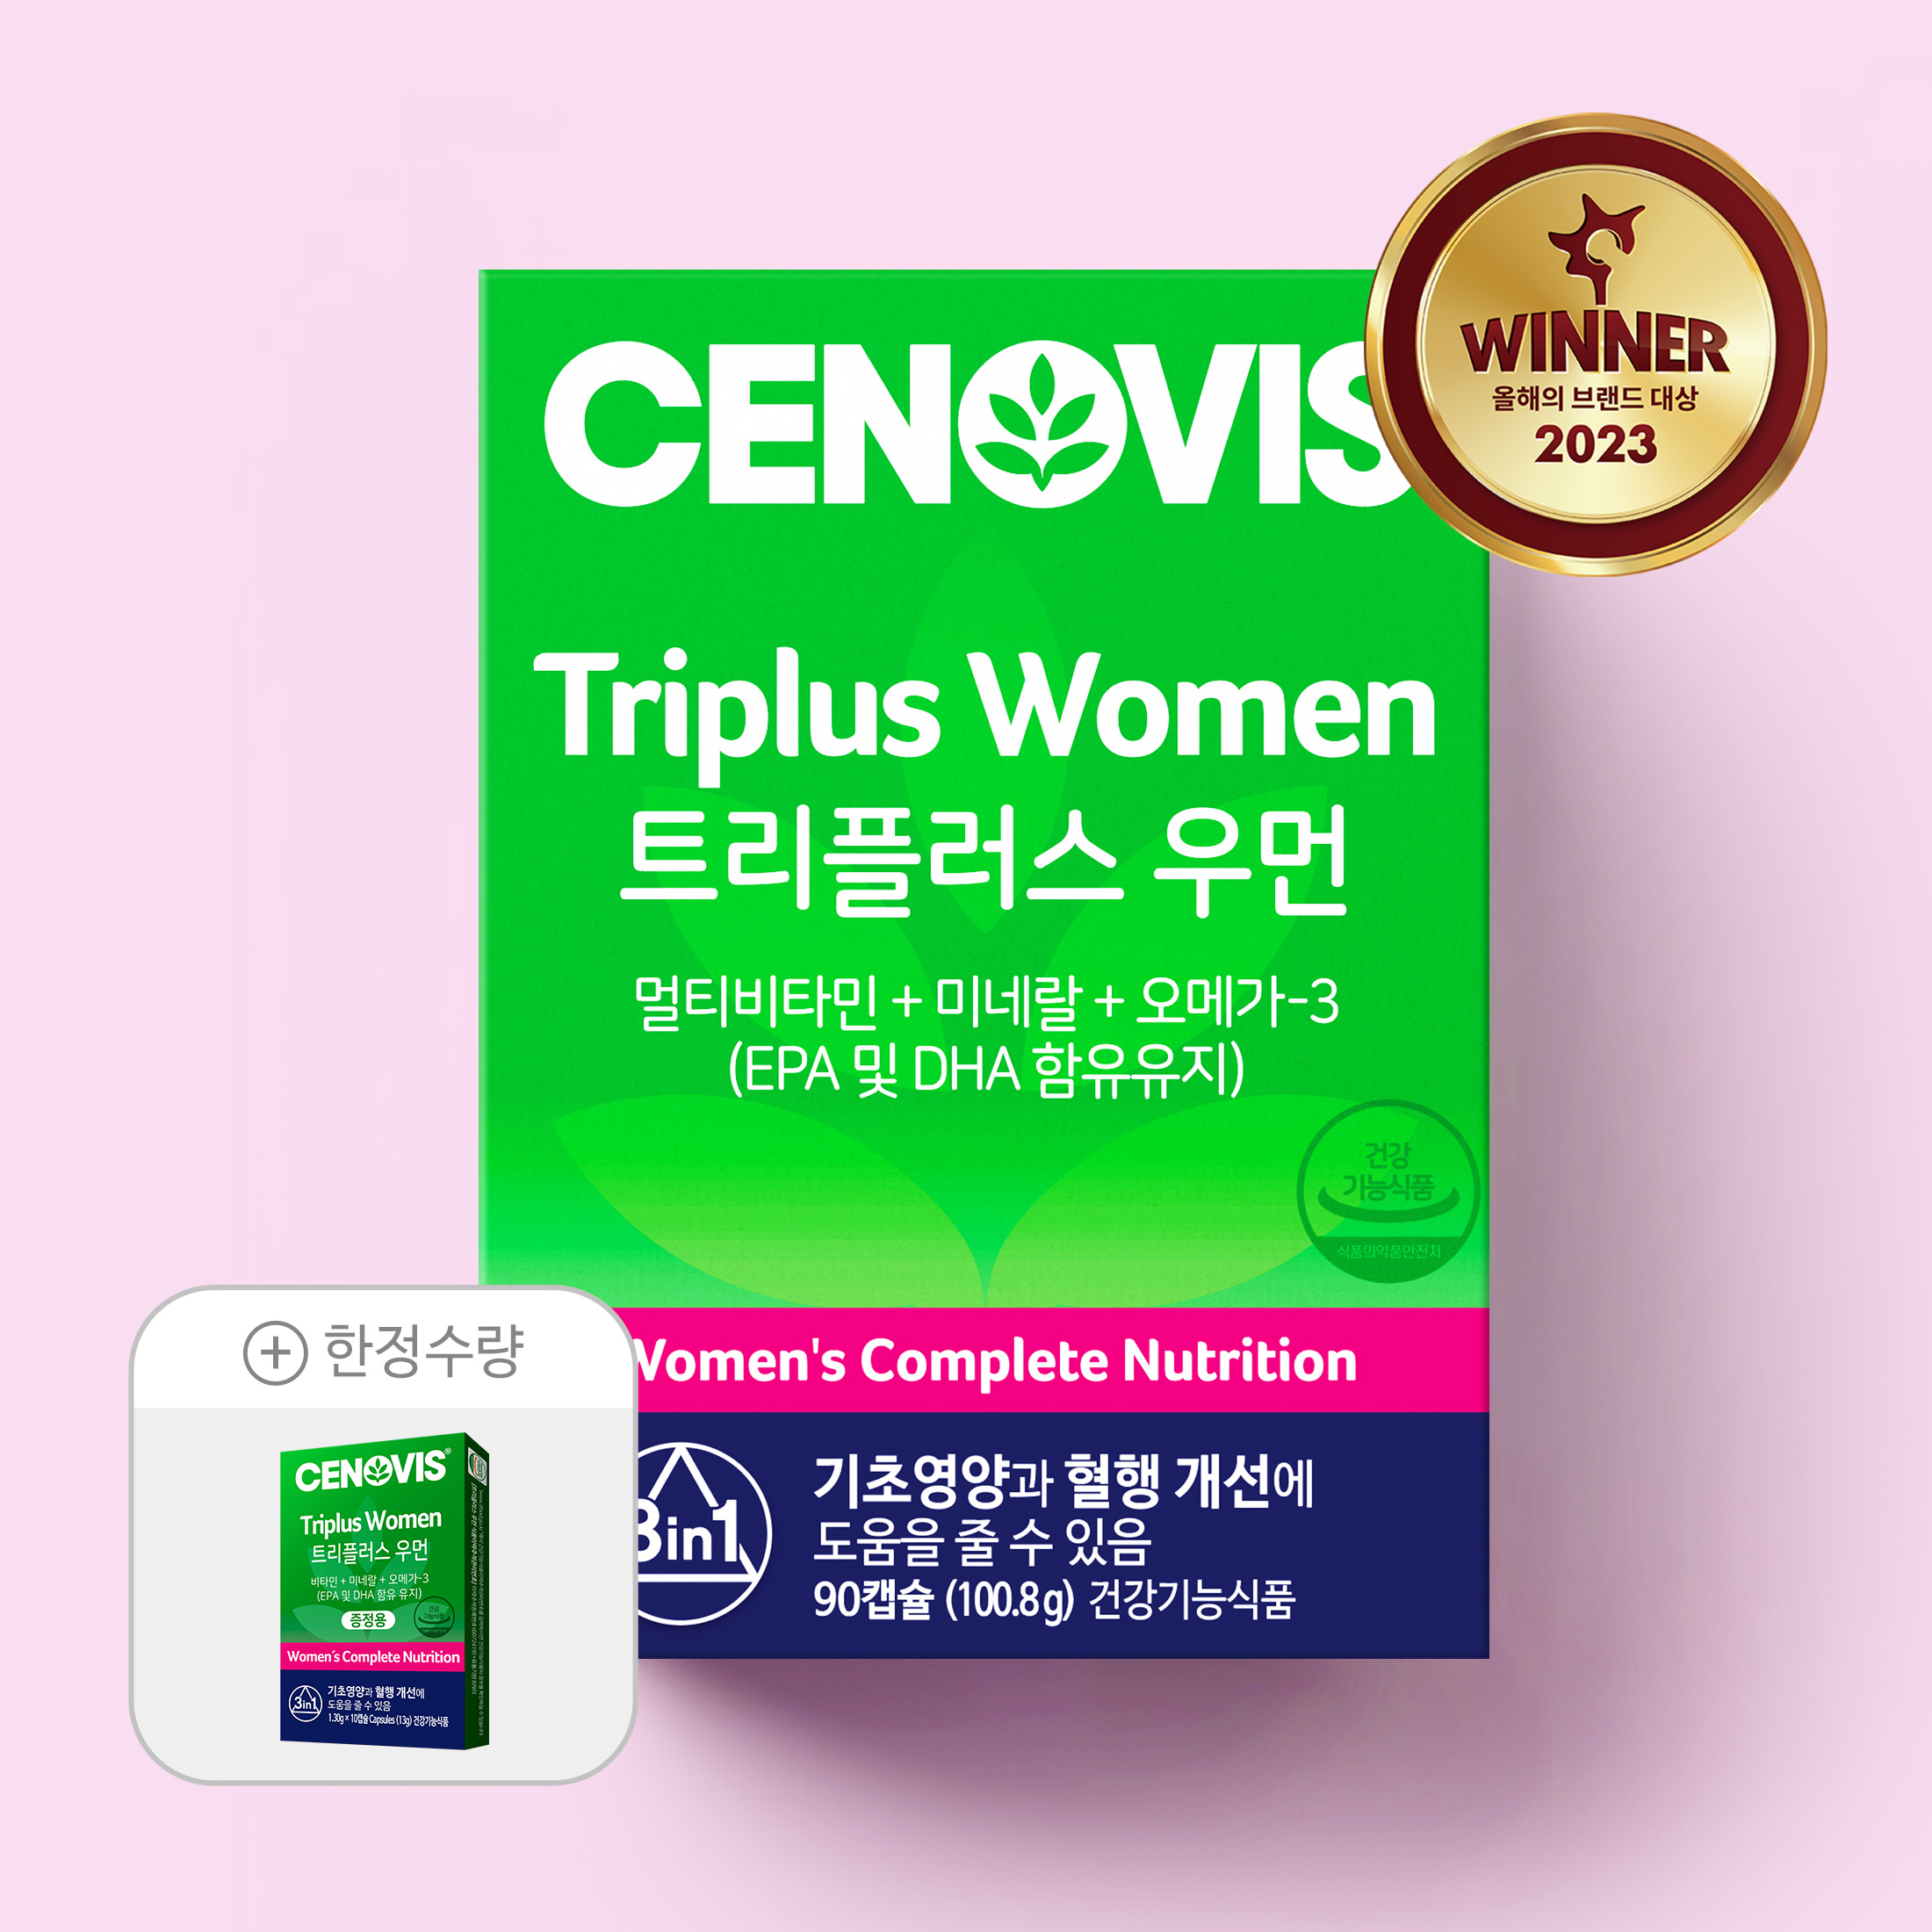 [이달의추천] 여성 트리플러스우먼 멀티비타민미네랄 90캡슐 + 한정수량 사은품 증정